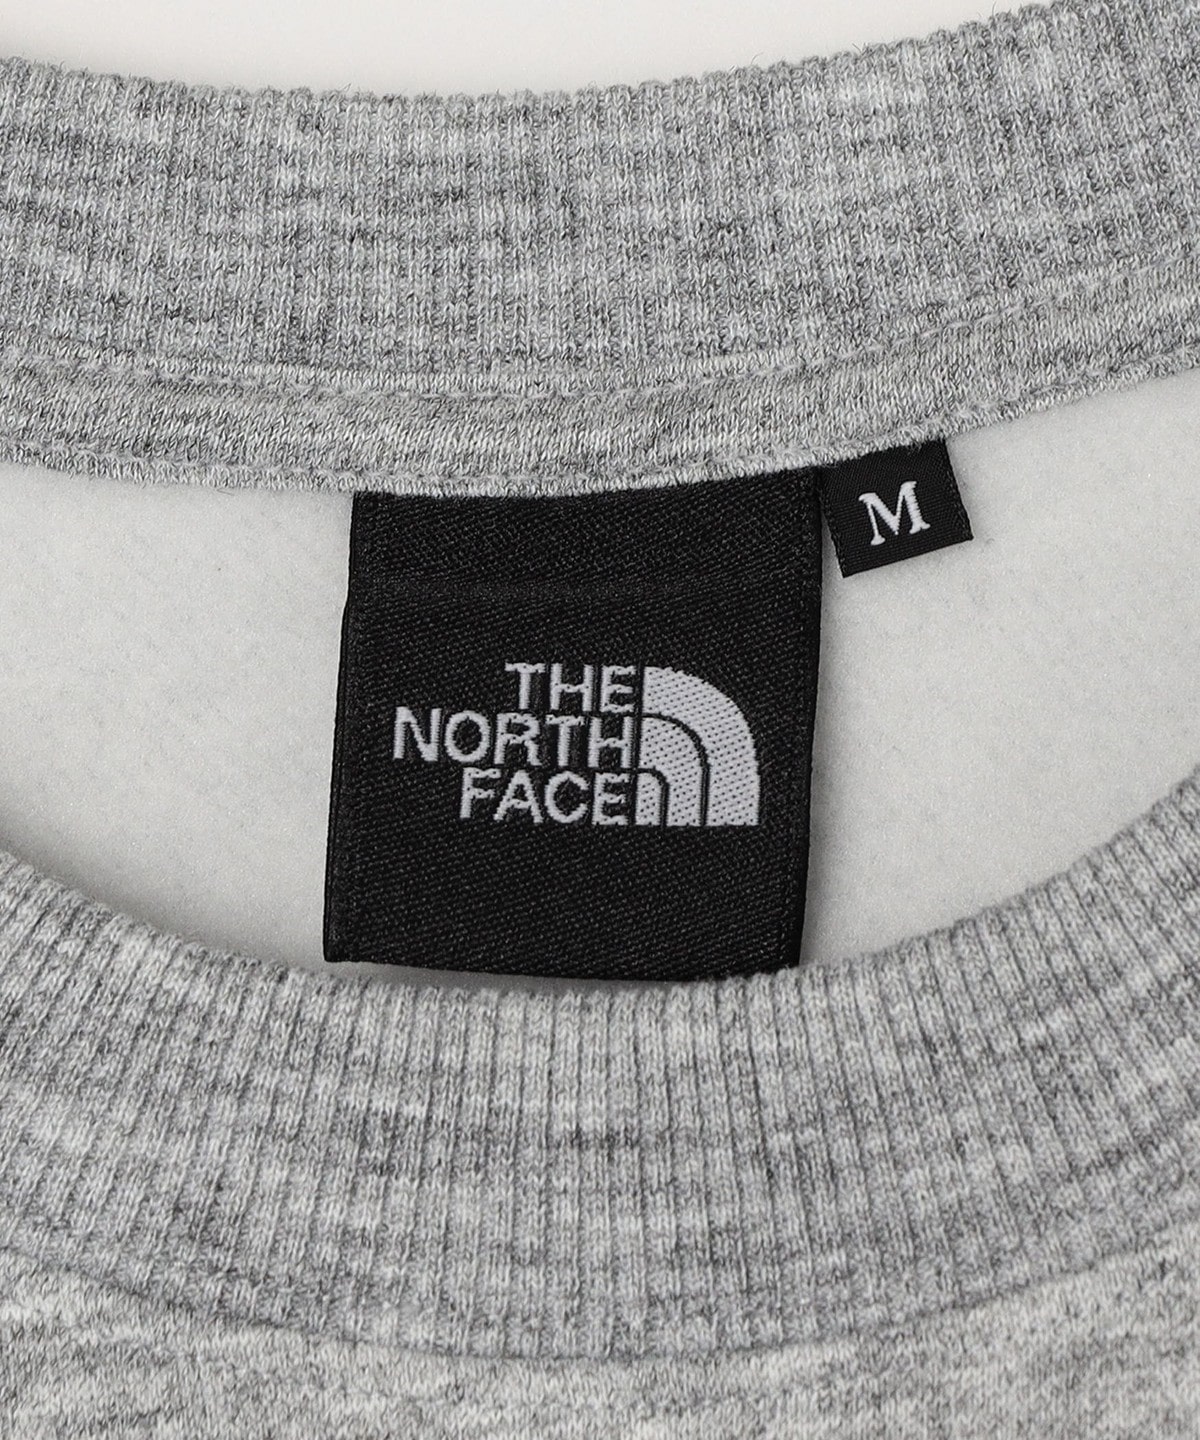 THE NORTH FACE: スモール ロゴ スウェット クルー: Tシャツ